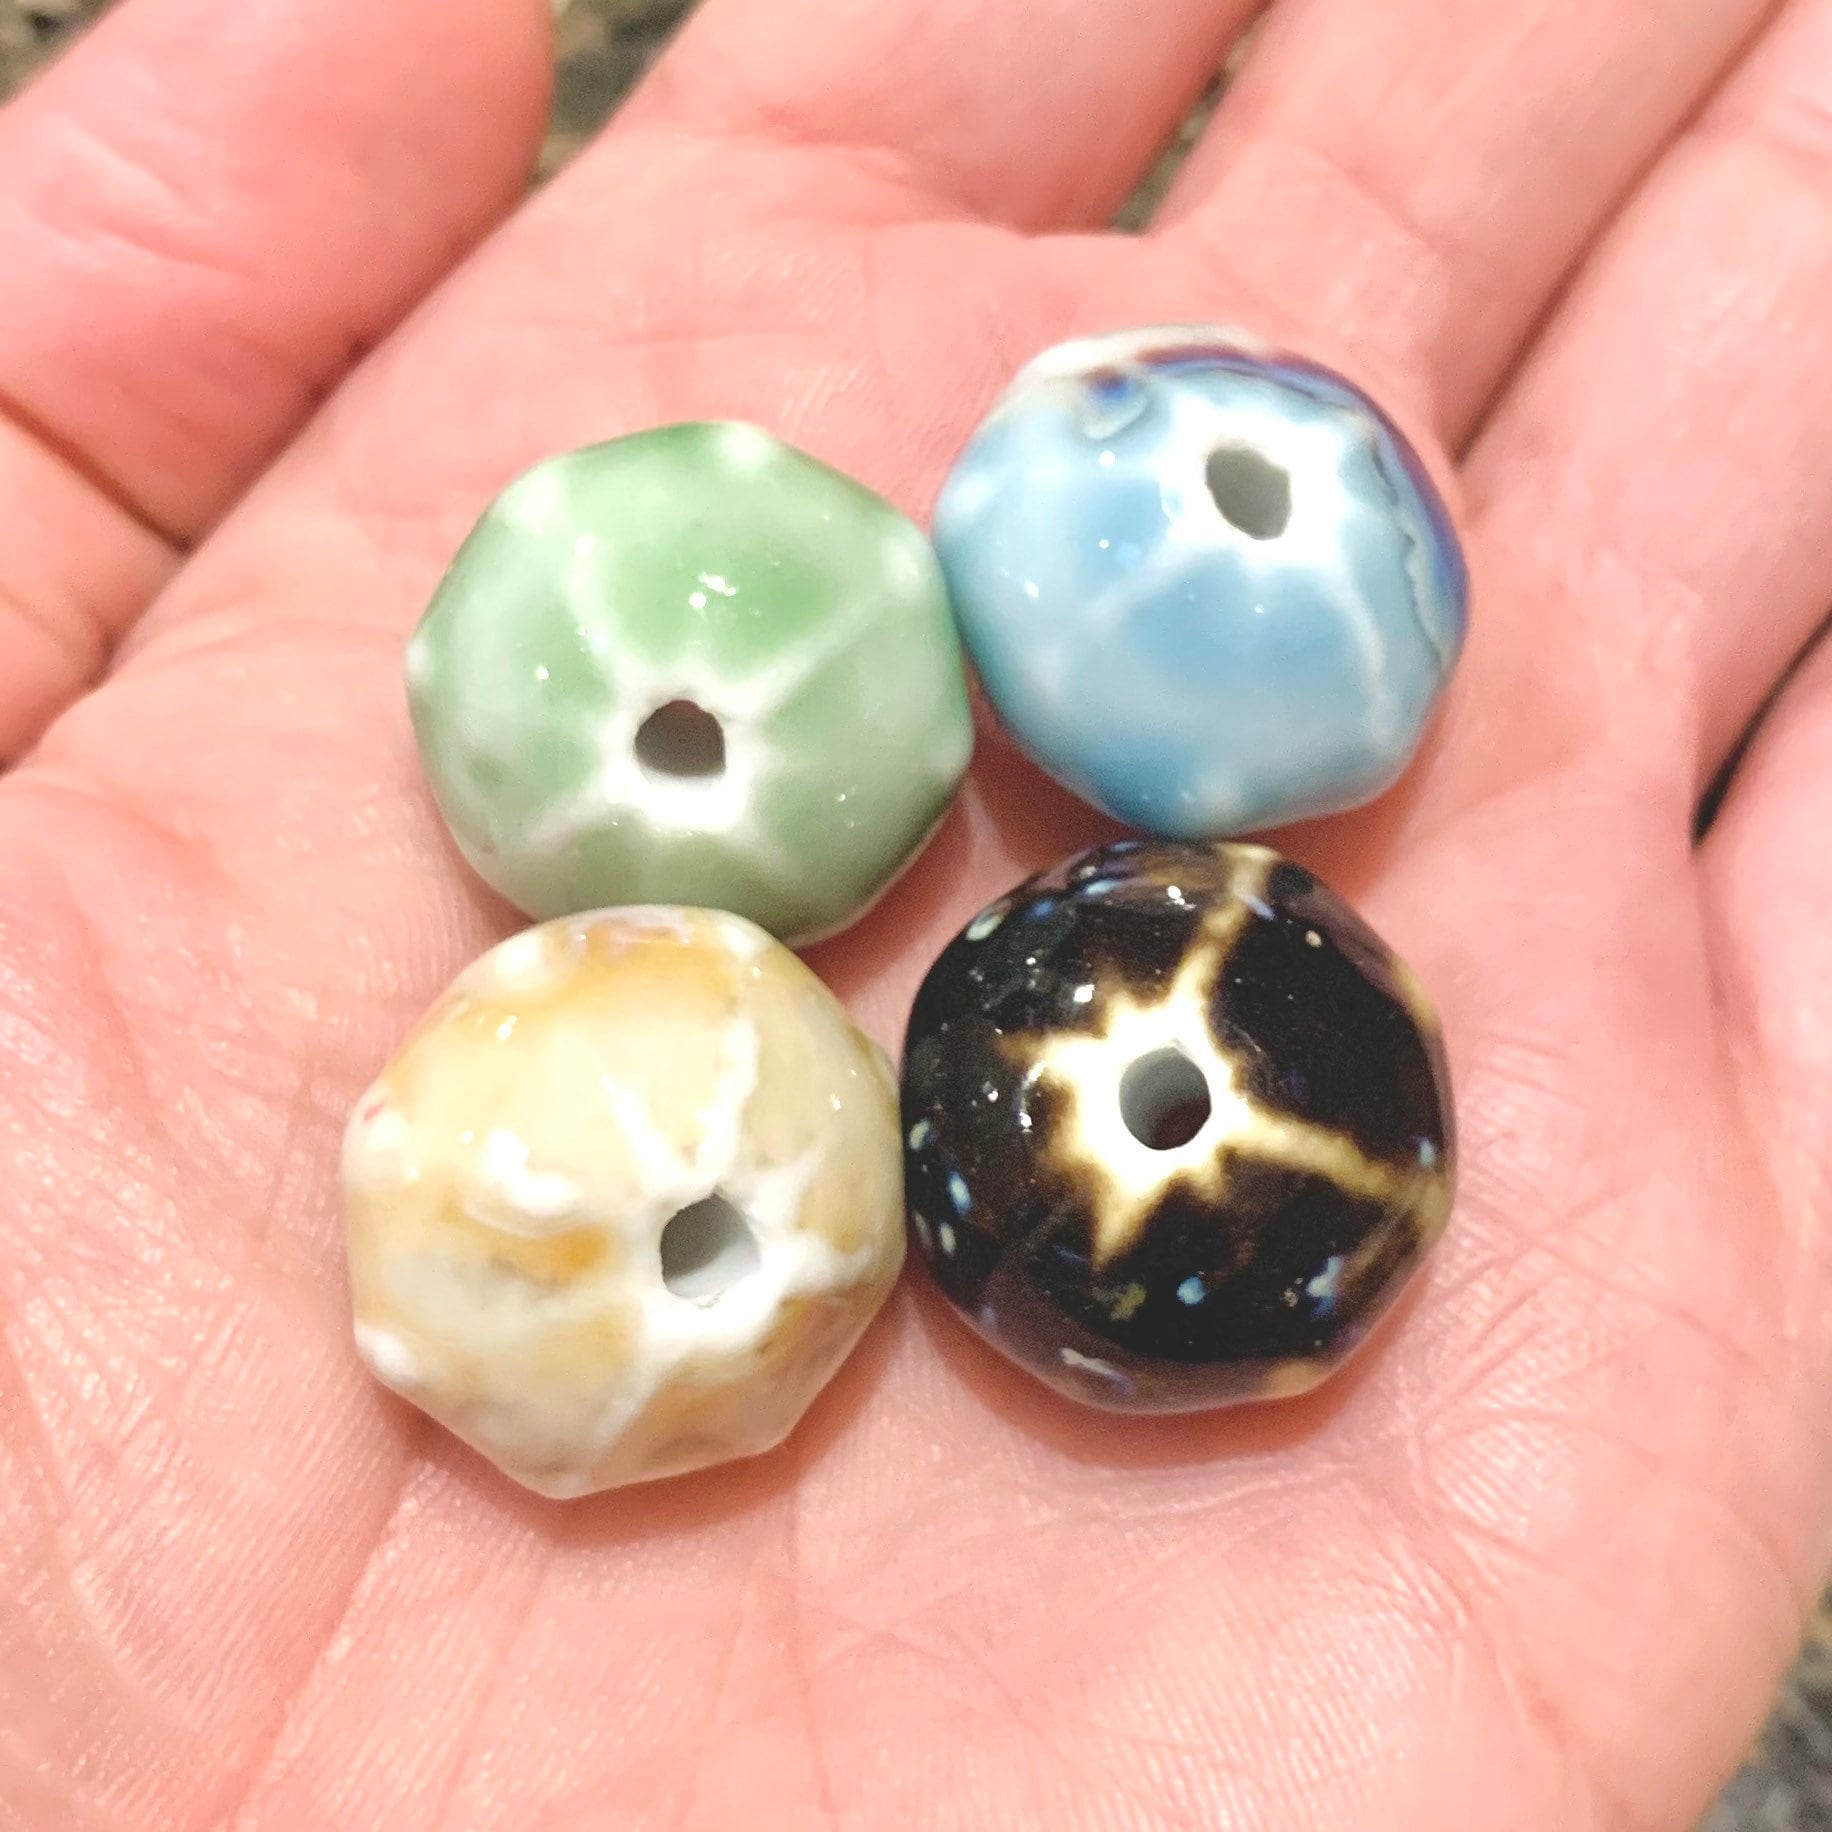 2 pcs - 15mm Ceramic Beads - Large Irregular Shape Boho Style Beads - 4 color variations